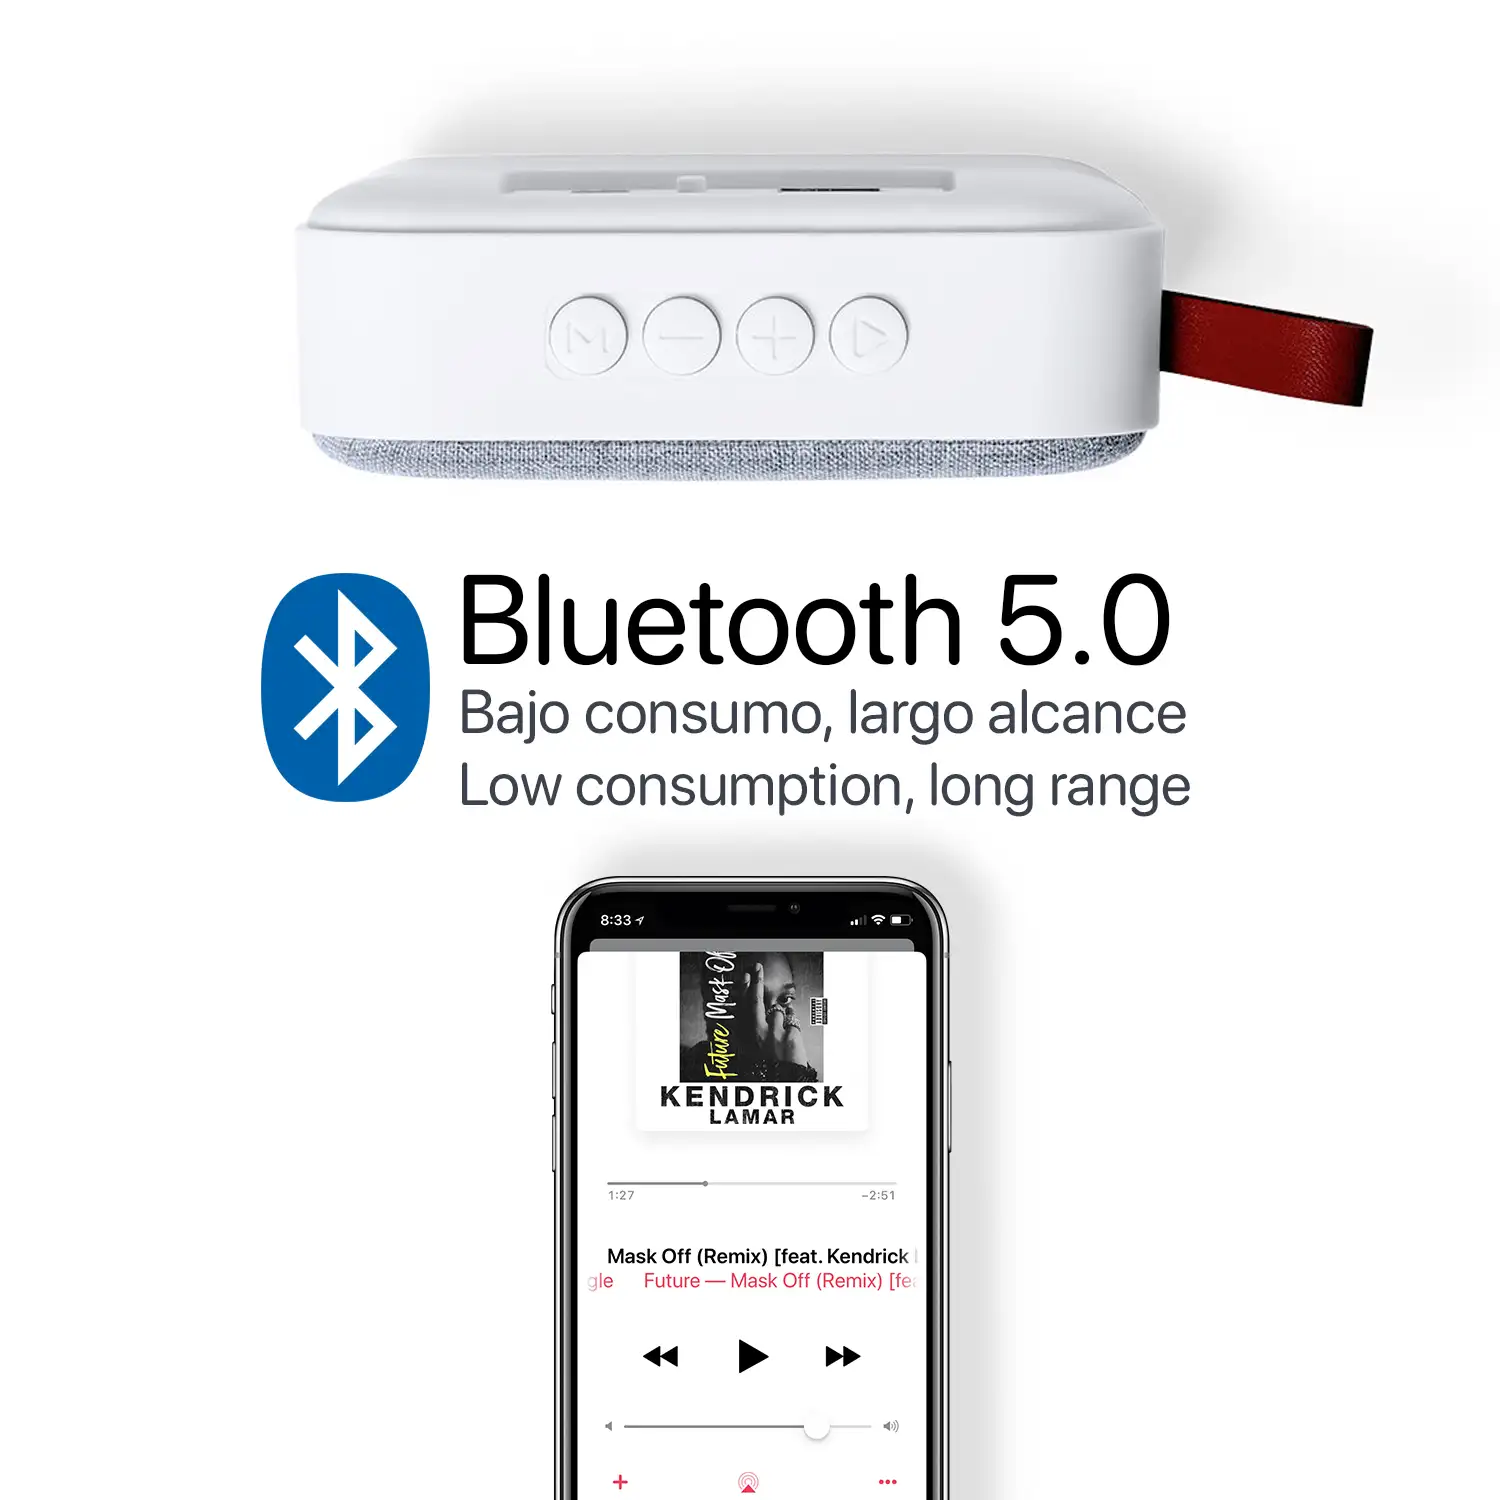 Altavoz Tirko Bluetooth 5.0 3W. Asa de polipiel. Función manos libres, USB, micro SD y radio FM.